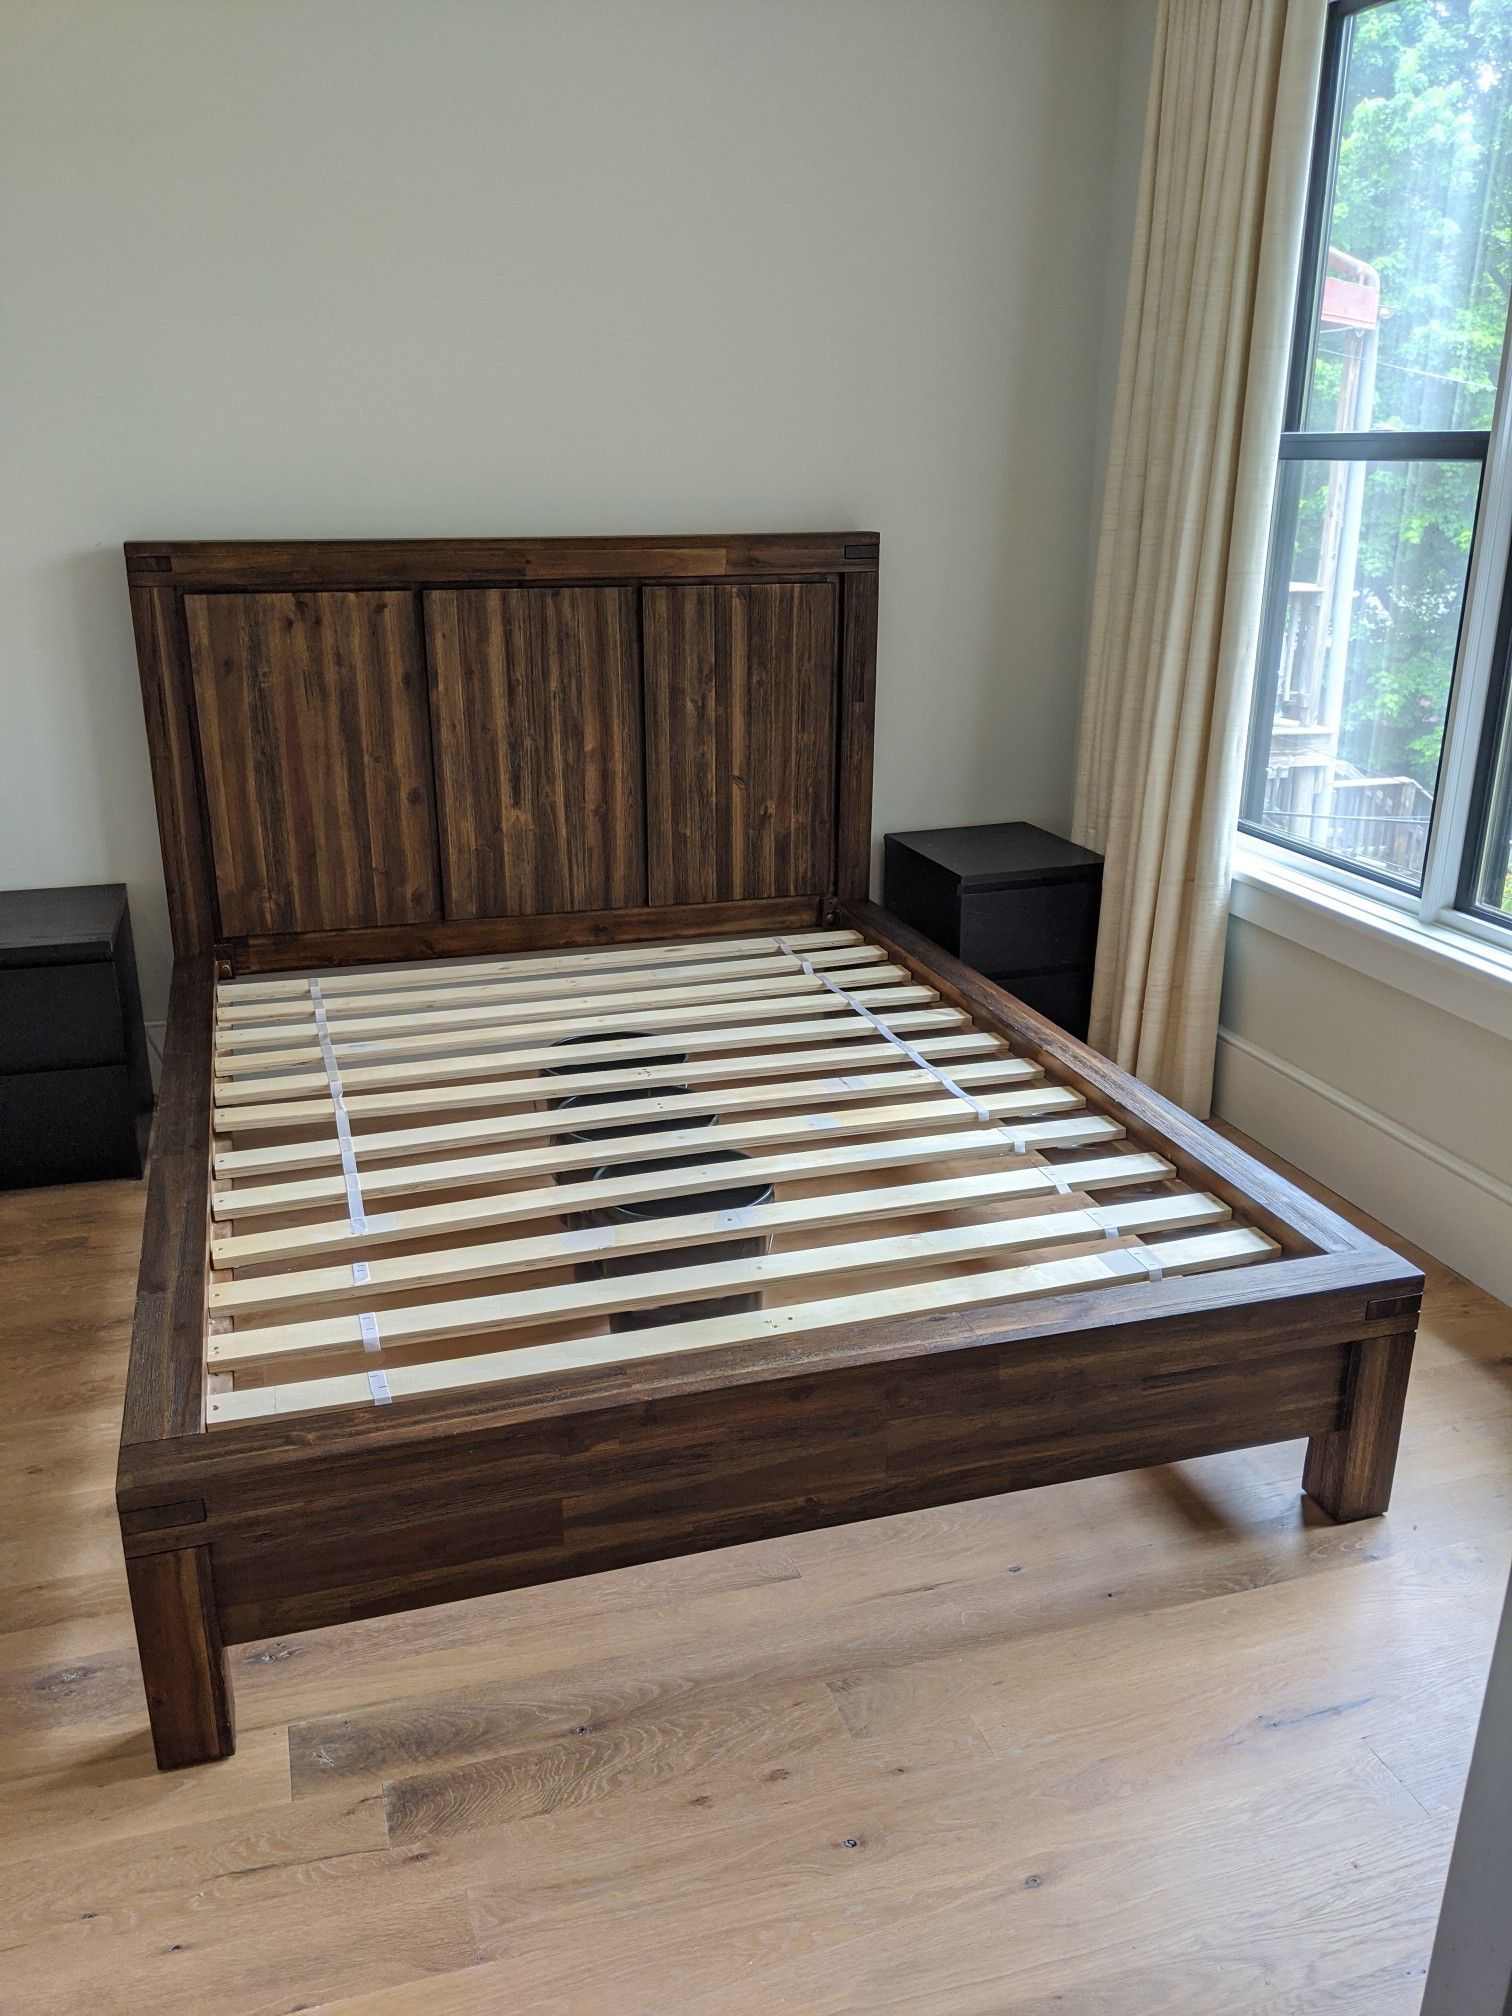 Beautiful queen size hardwood bed